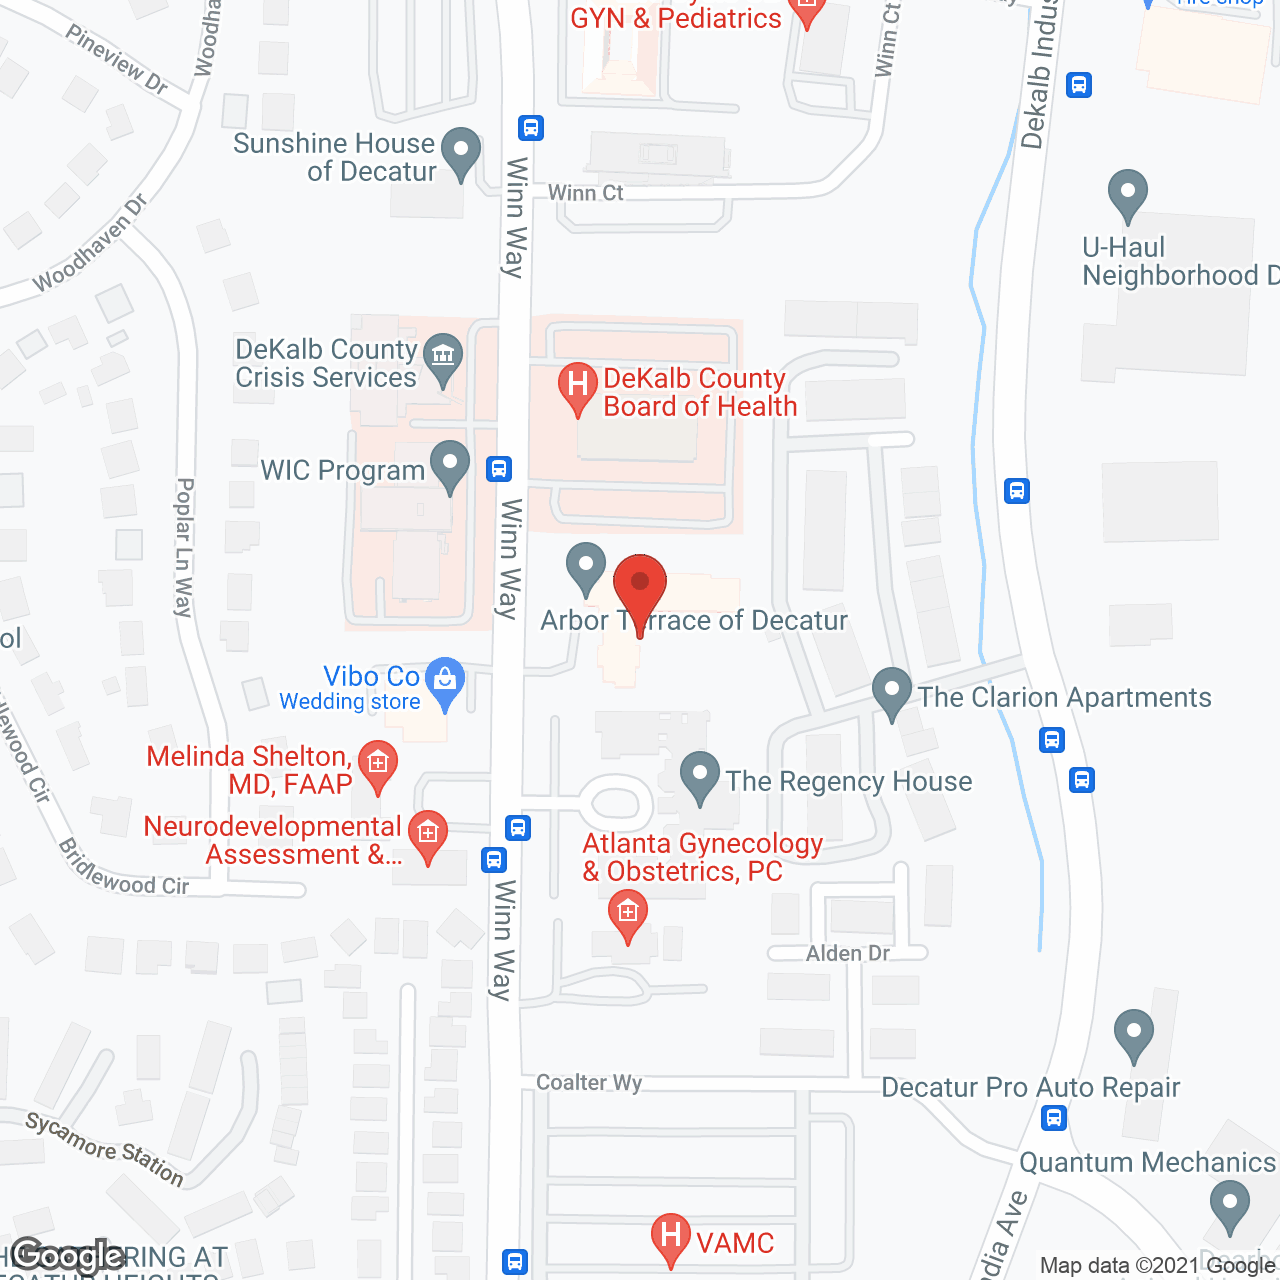 Arbor Terrace of Decatur in google map